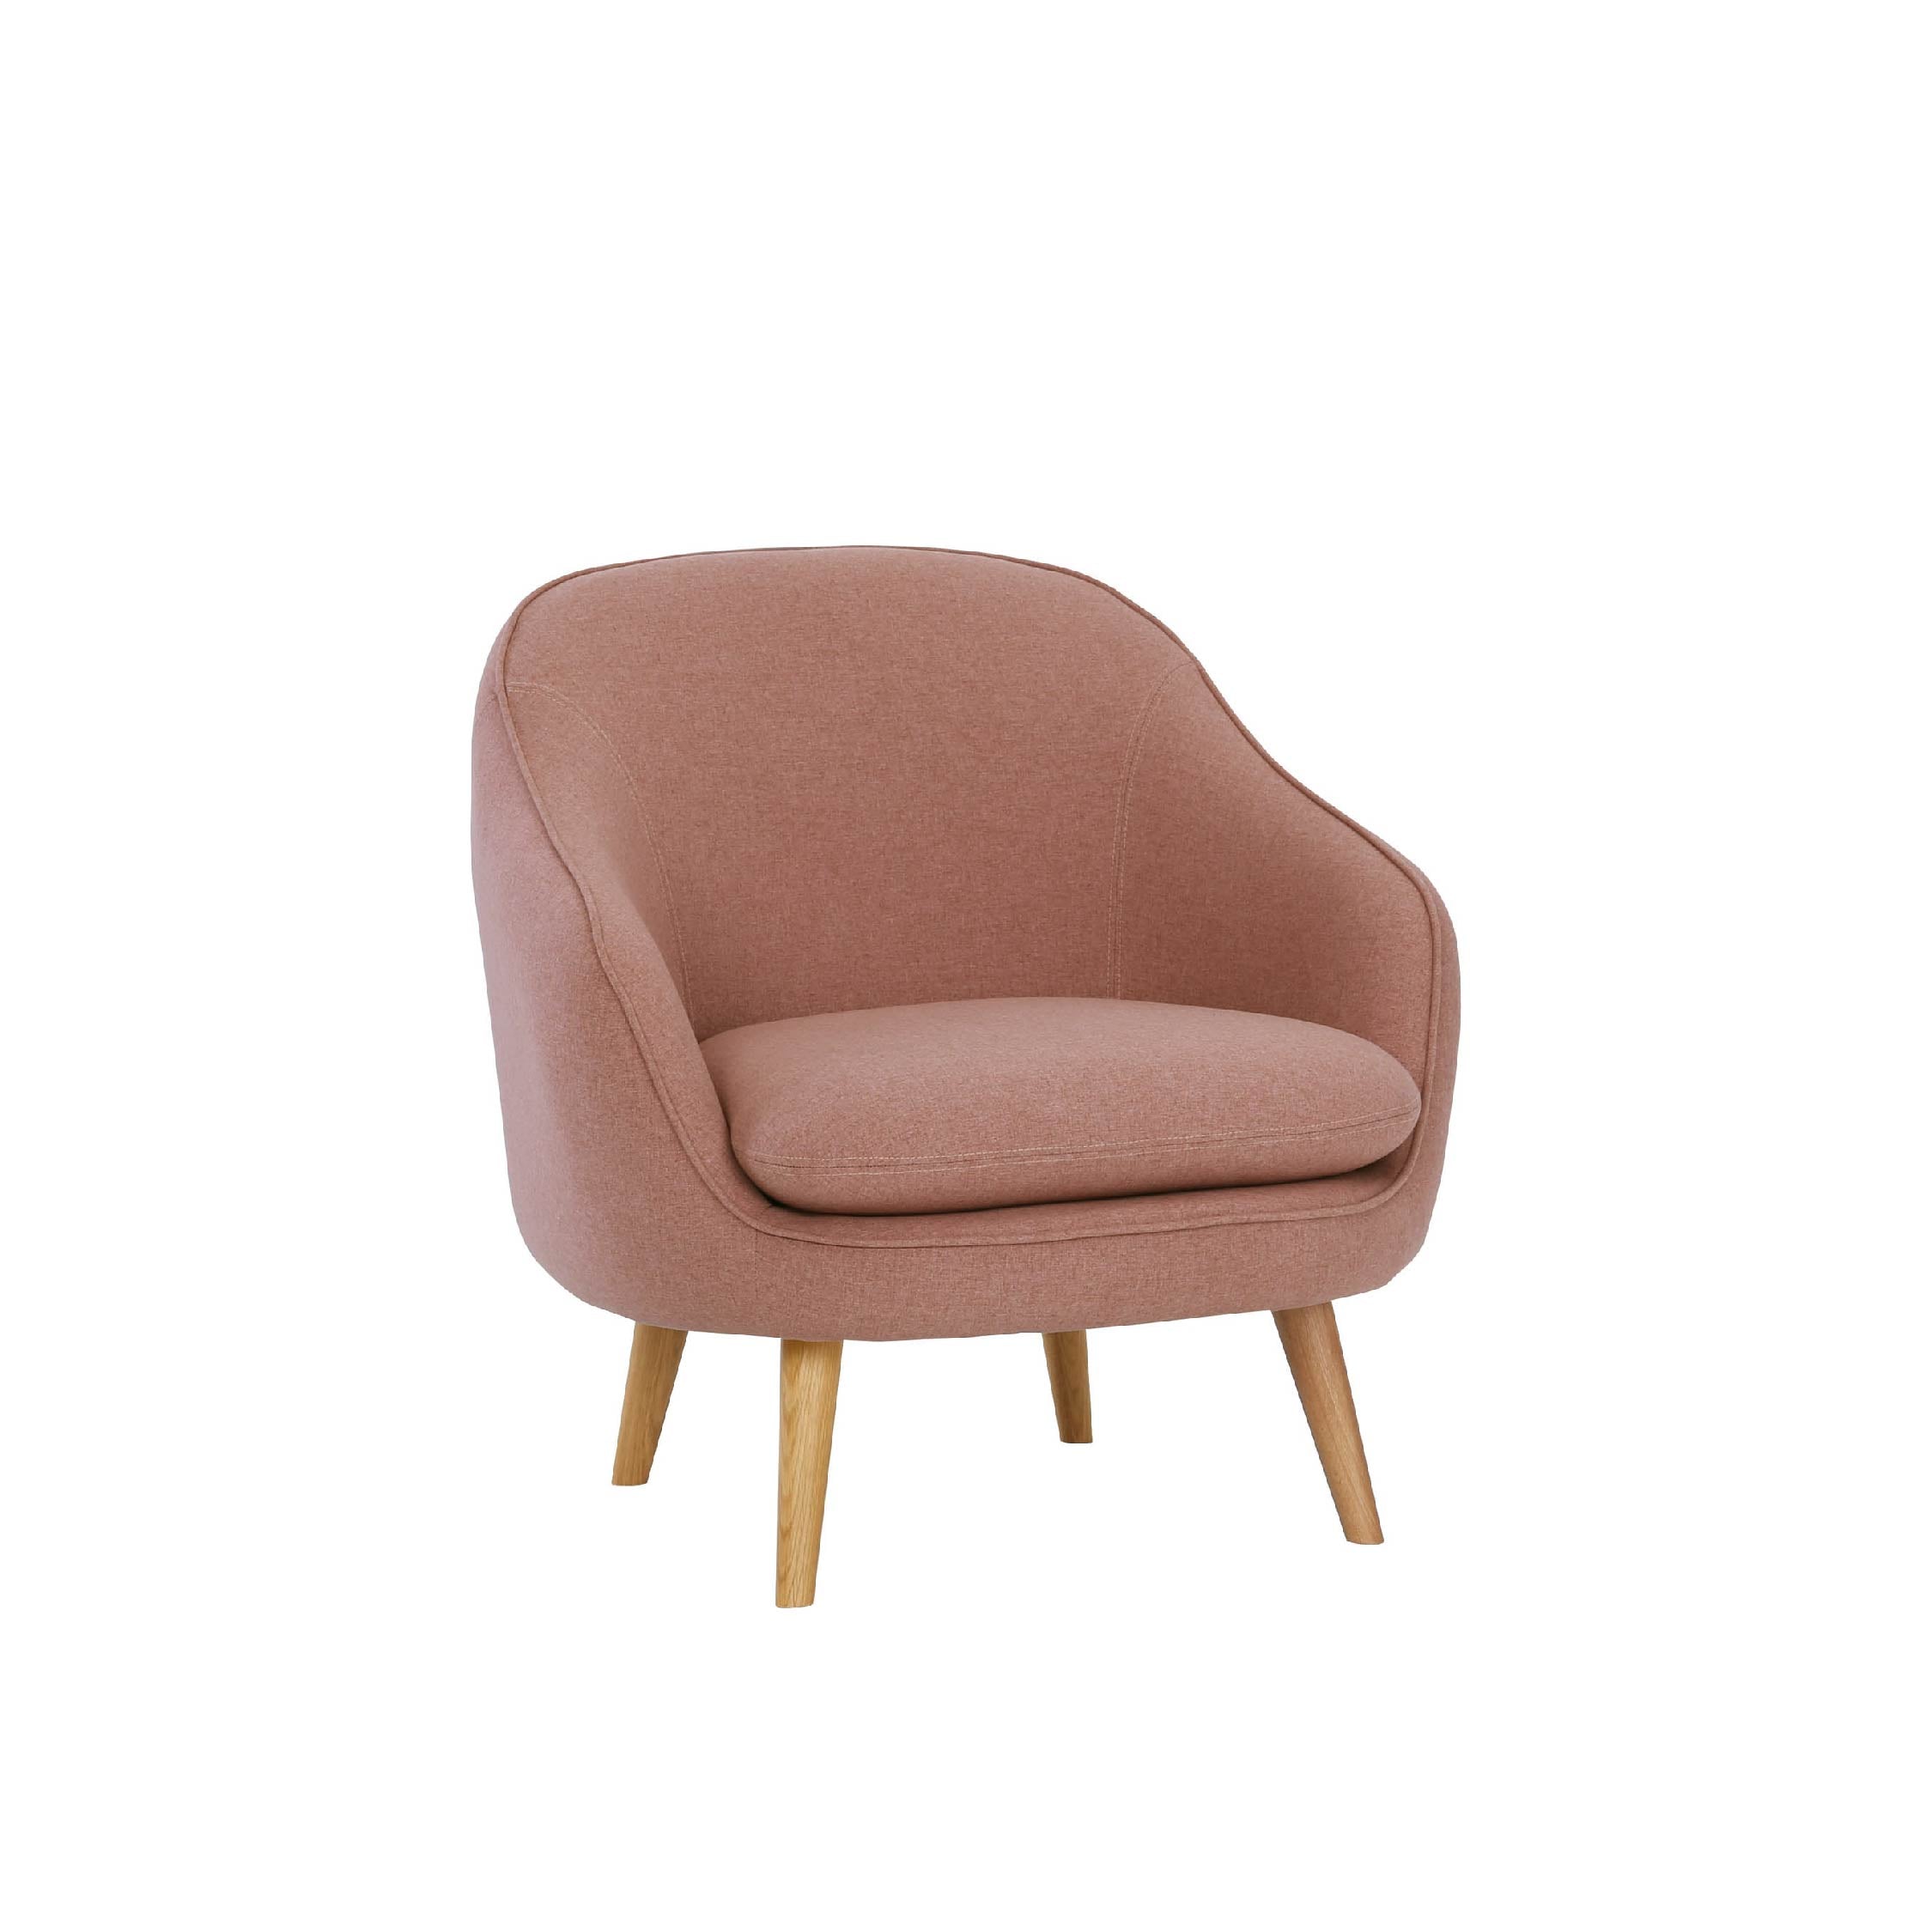 MINIMO Lounge Chair